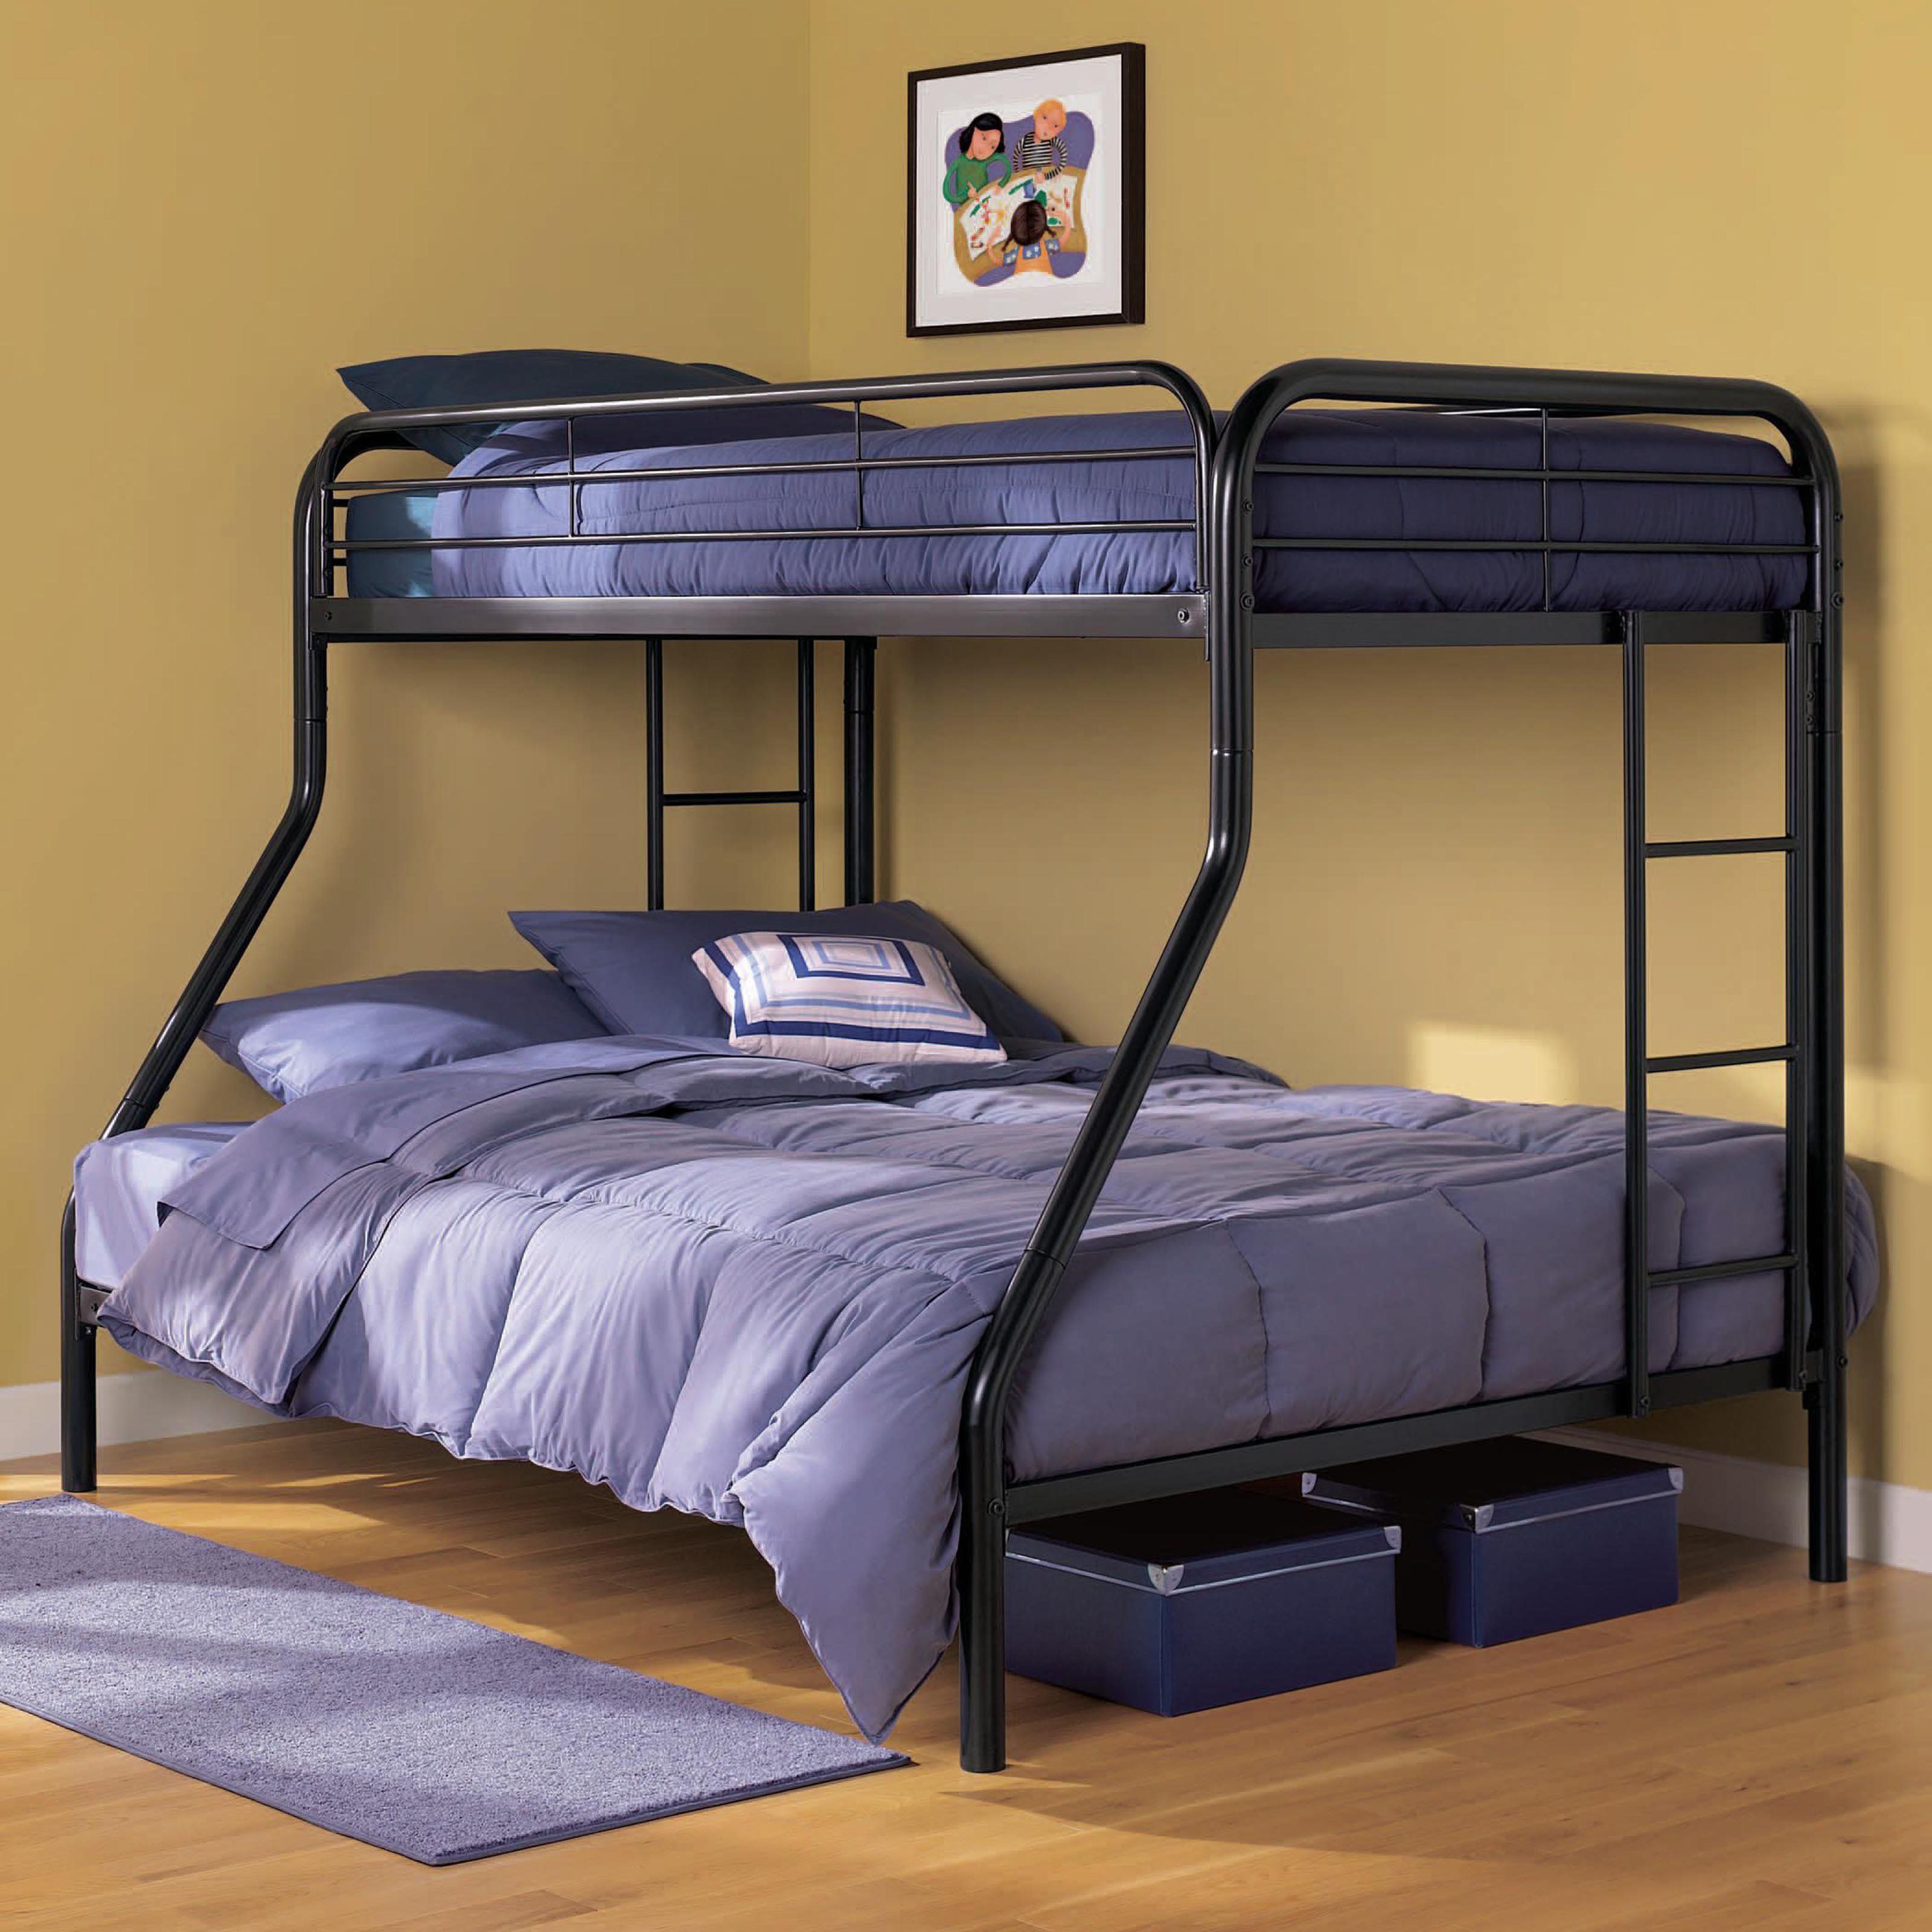 Двухместная система. Двухъярусная кровать Gunmetal Full/Full Bunk Bed. Двухъярусная кровать Twin/Full Bunkbed (Metal). Кровать металлическая двухъярусная 1964x930x1750. Трехспальная кровать взрослая одноярусная.